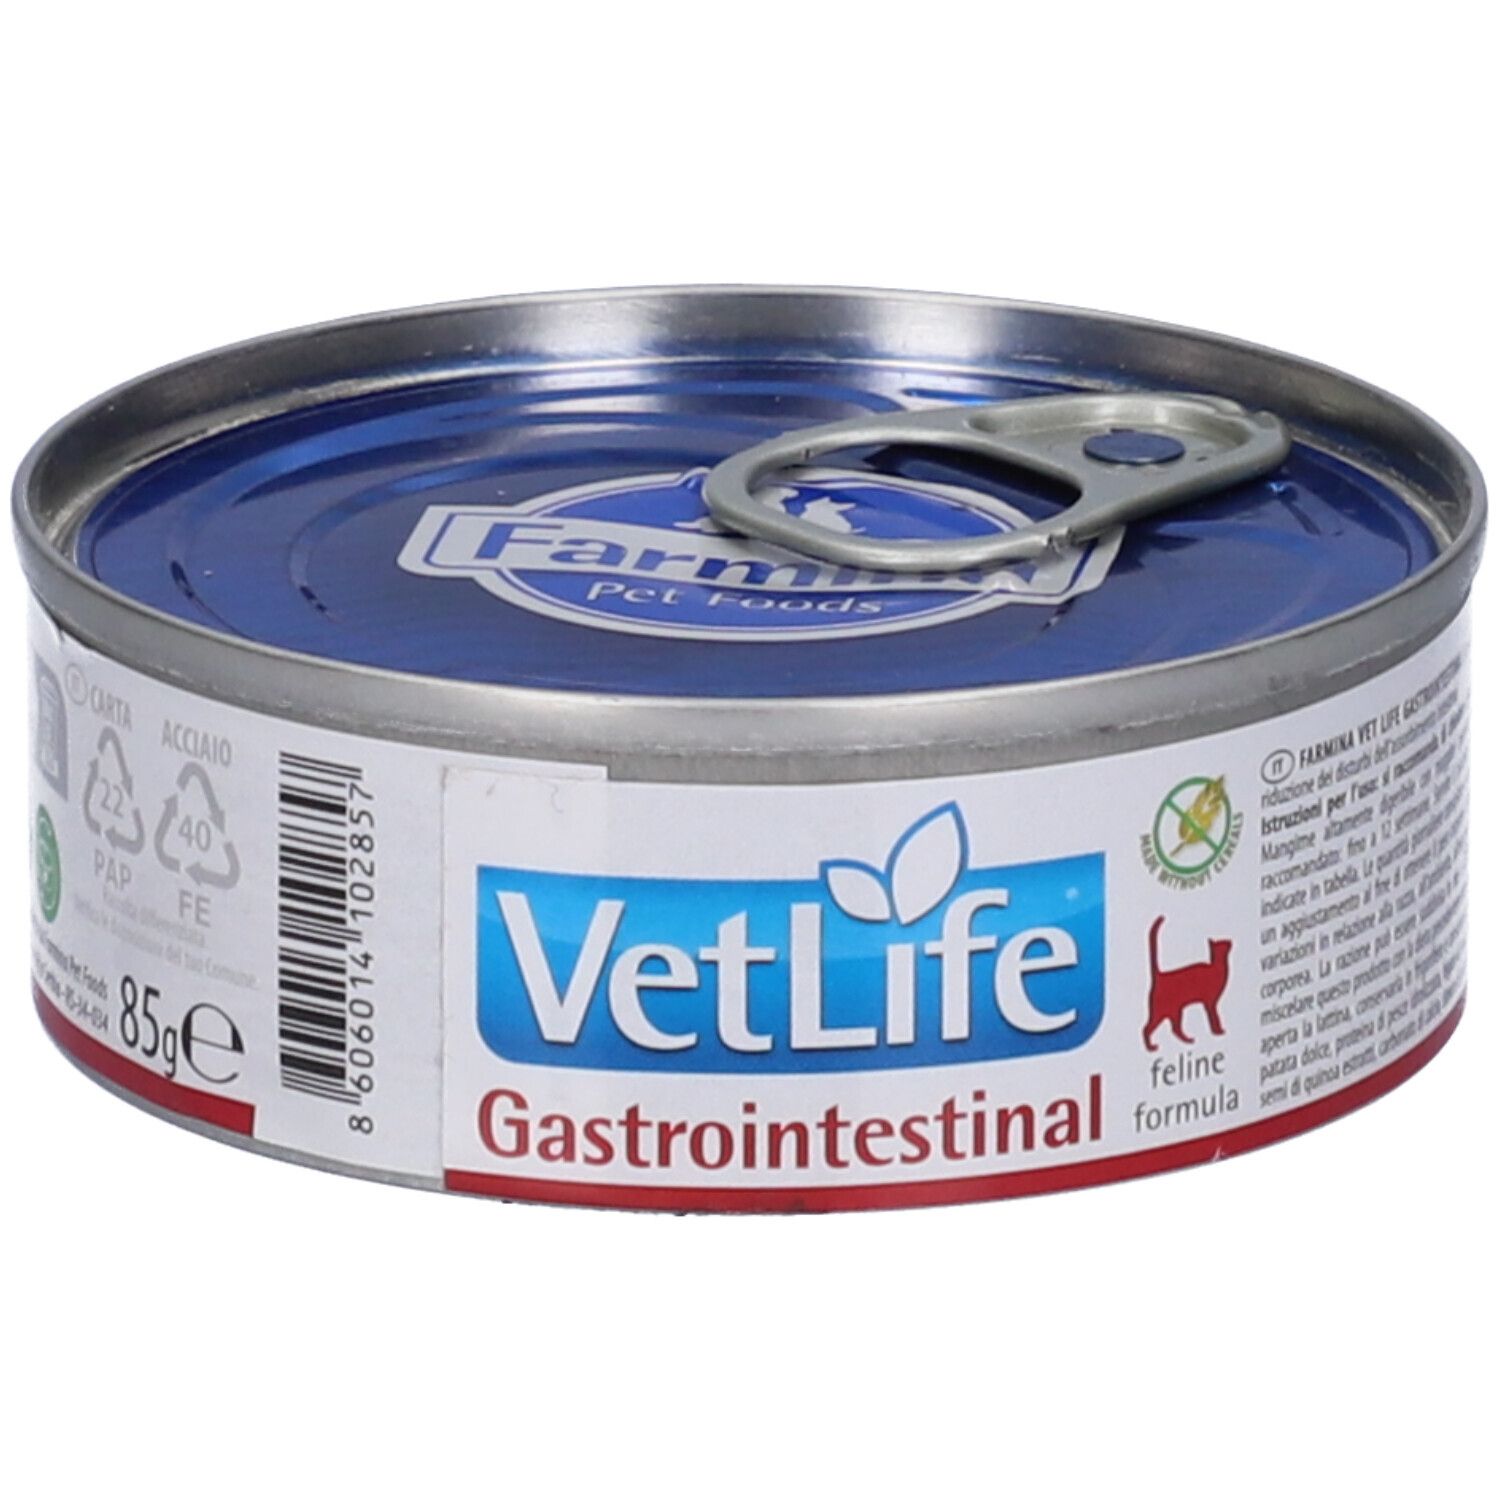 Image of Farmina® VetLife Gastrointestinal Wet Food Feline